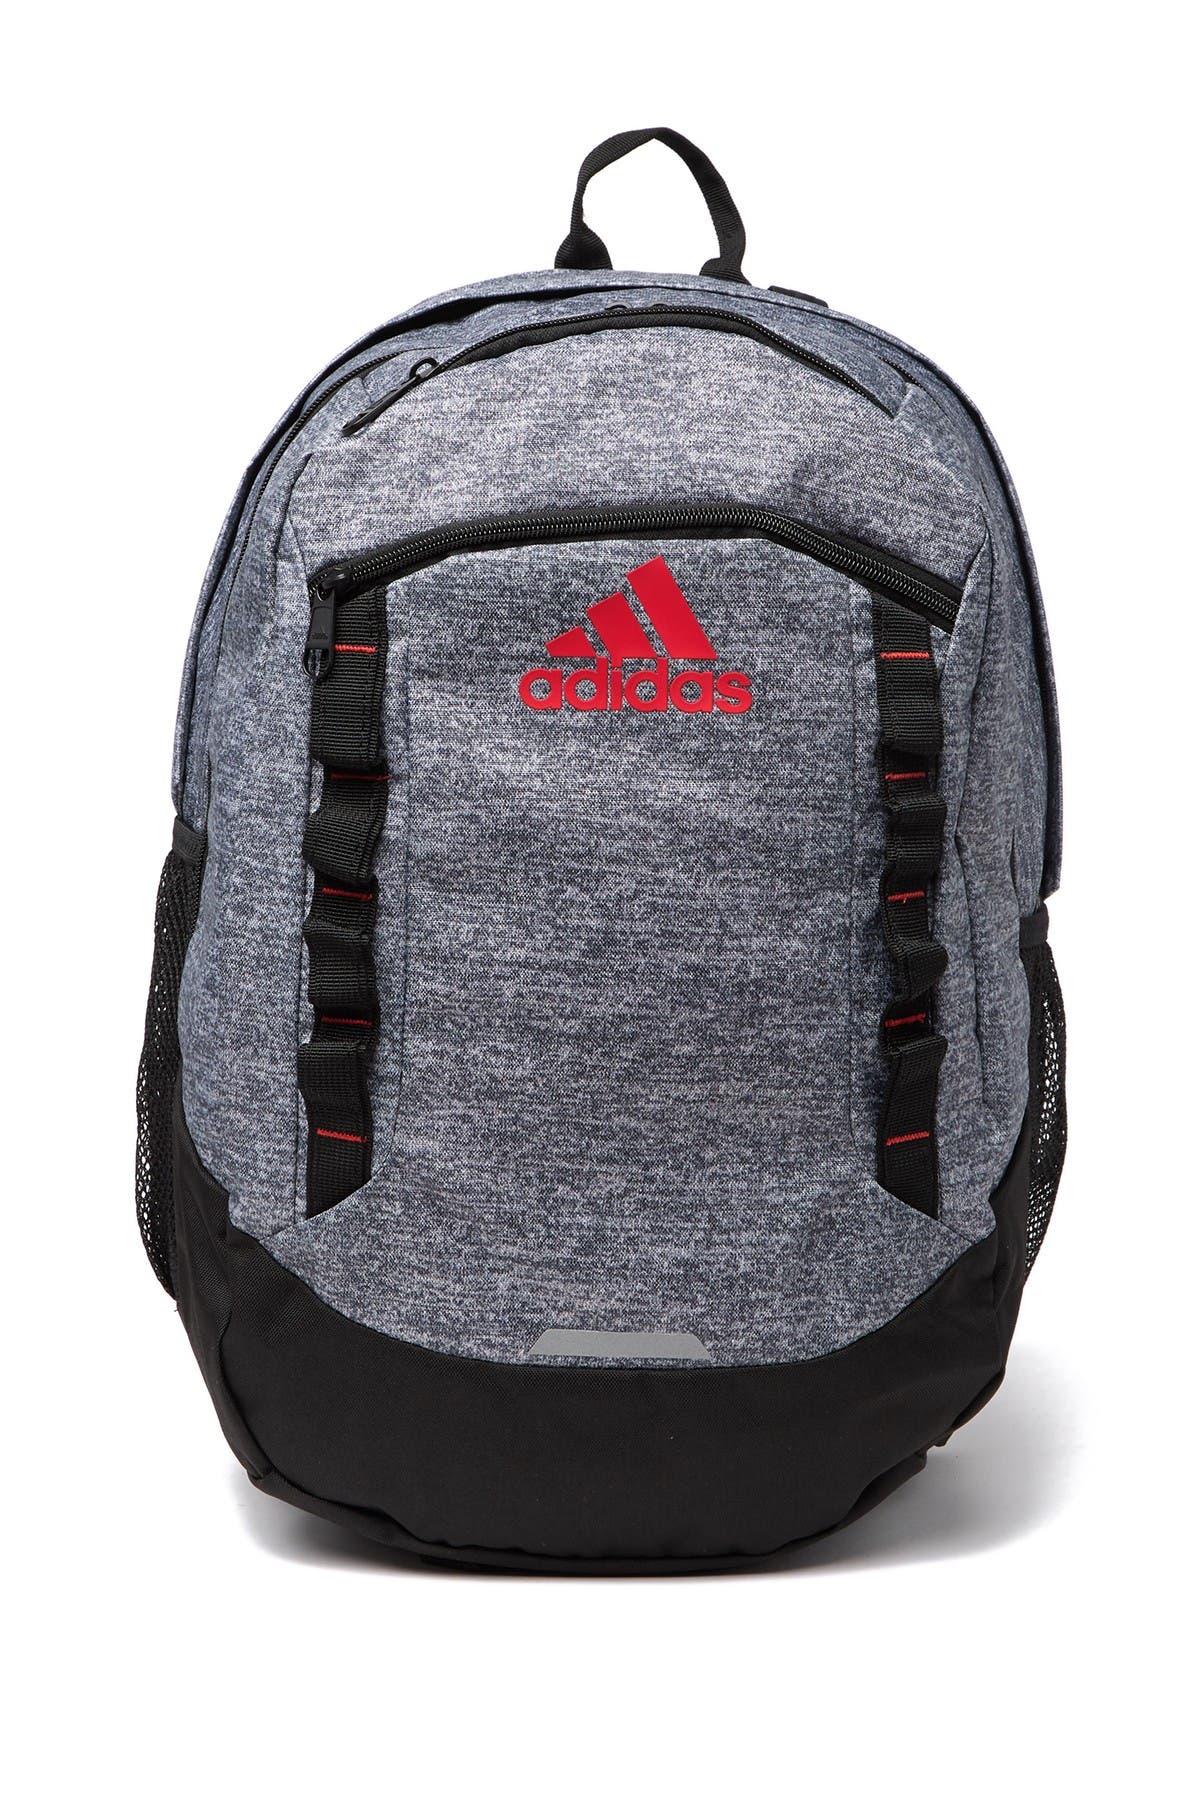 adidas backpack nordstrom rack